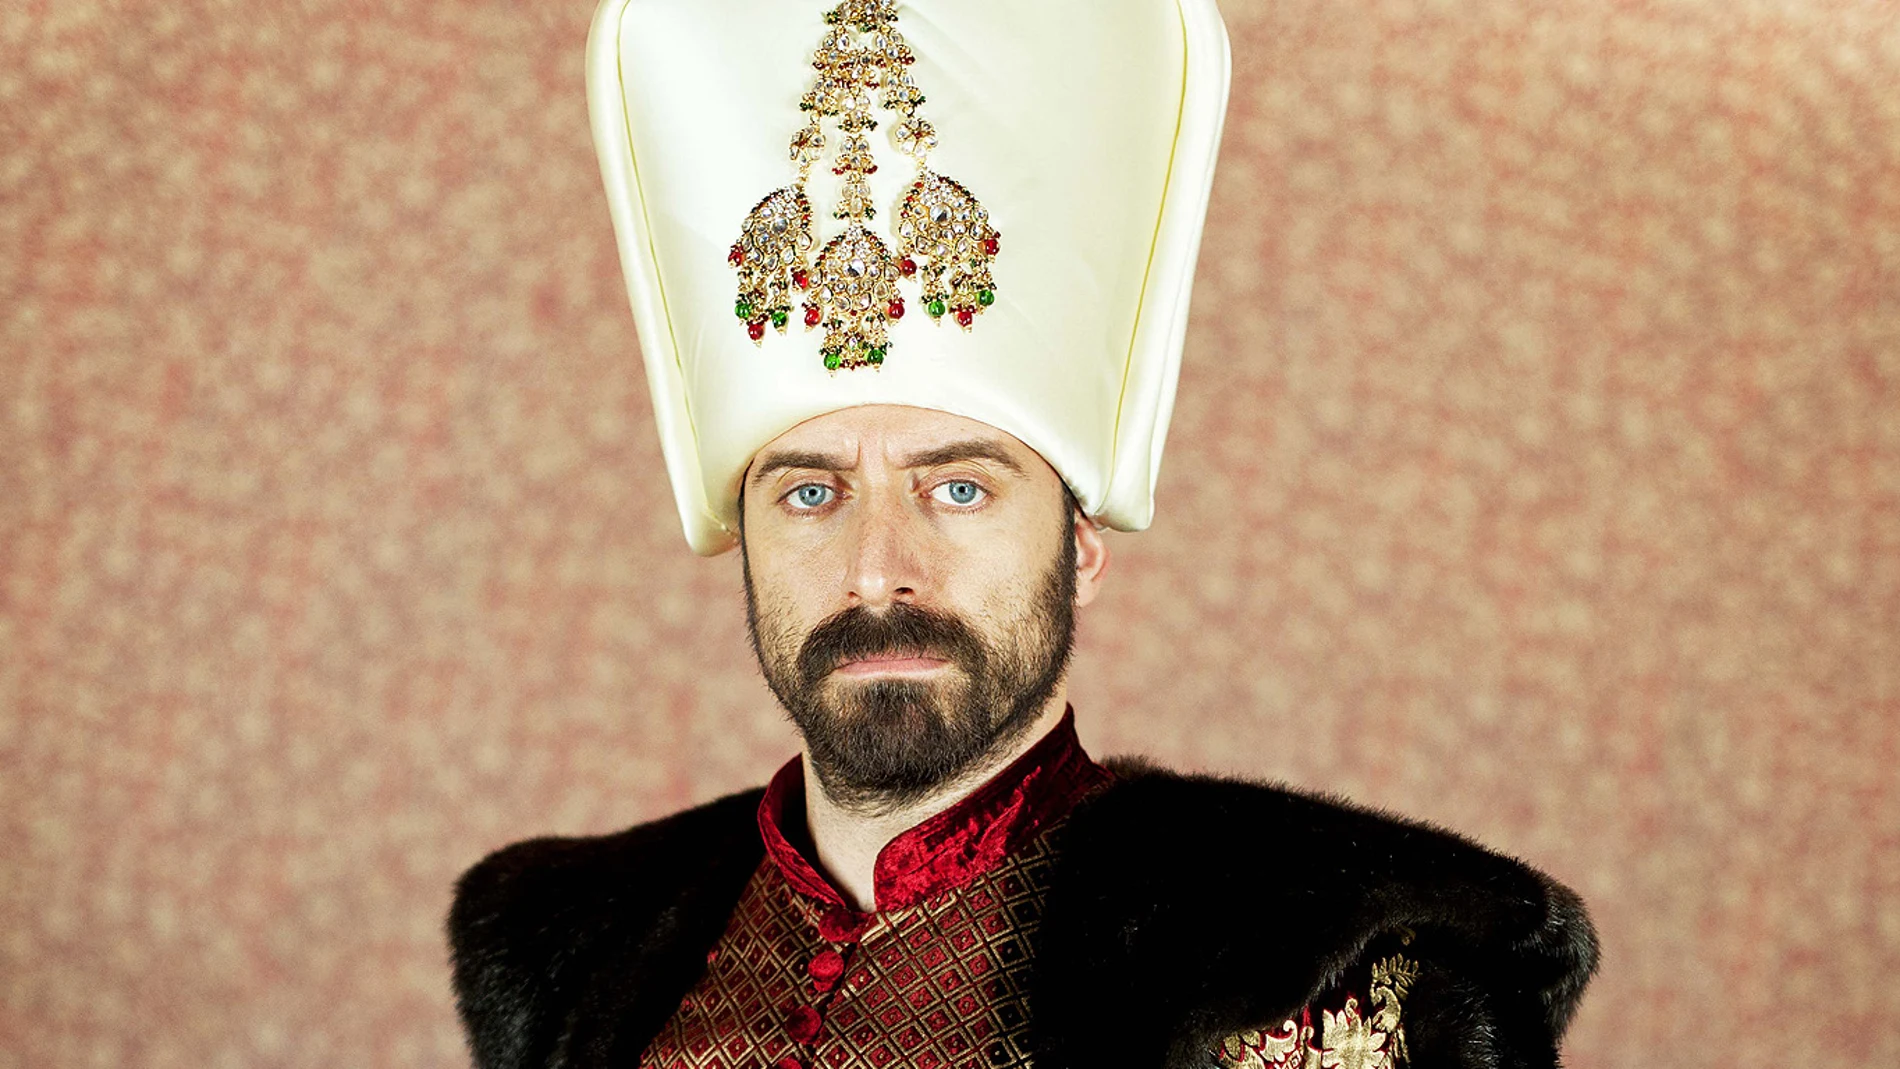 Solimán, el gran gobernante otomano